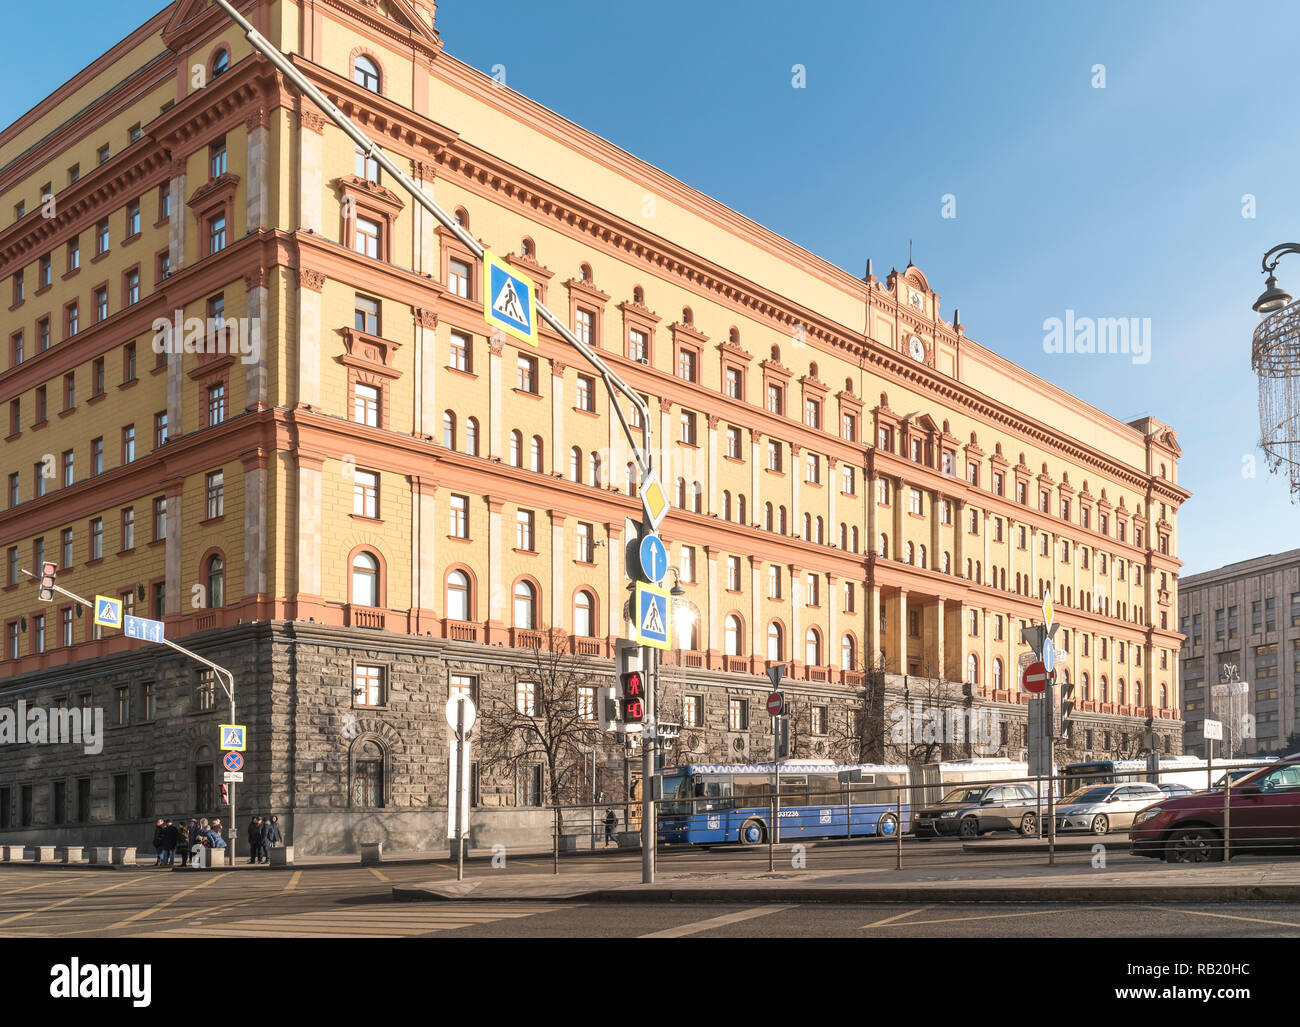 Mosca, Russia - dicembre 01.2018: Lubyanka Square. Edificio del Servizio federale di sicurezza Foto Stock